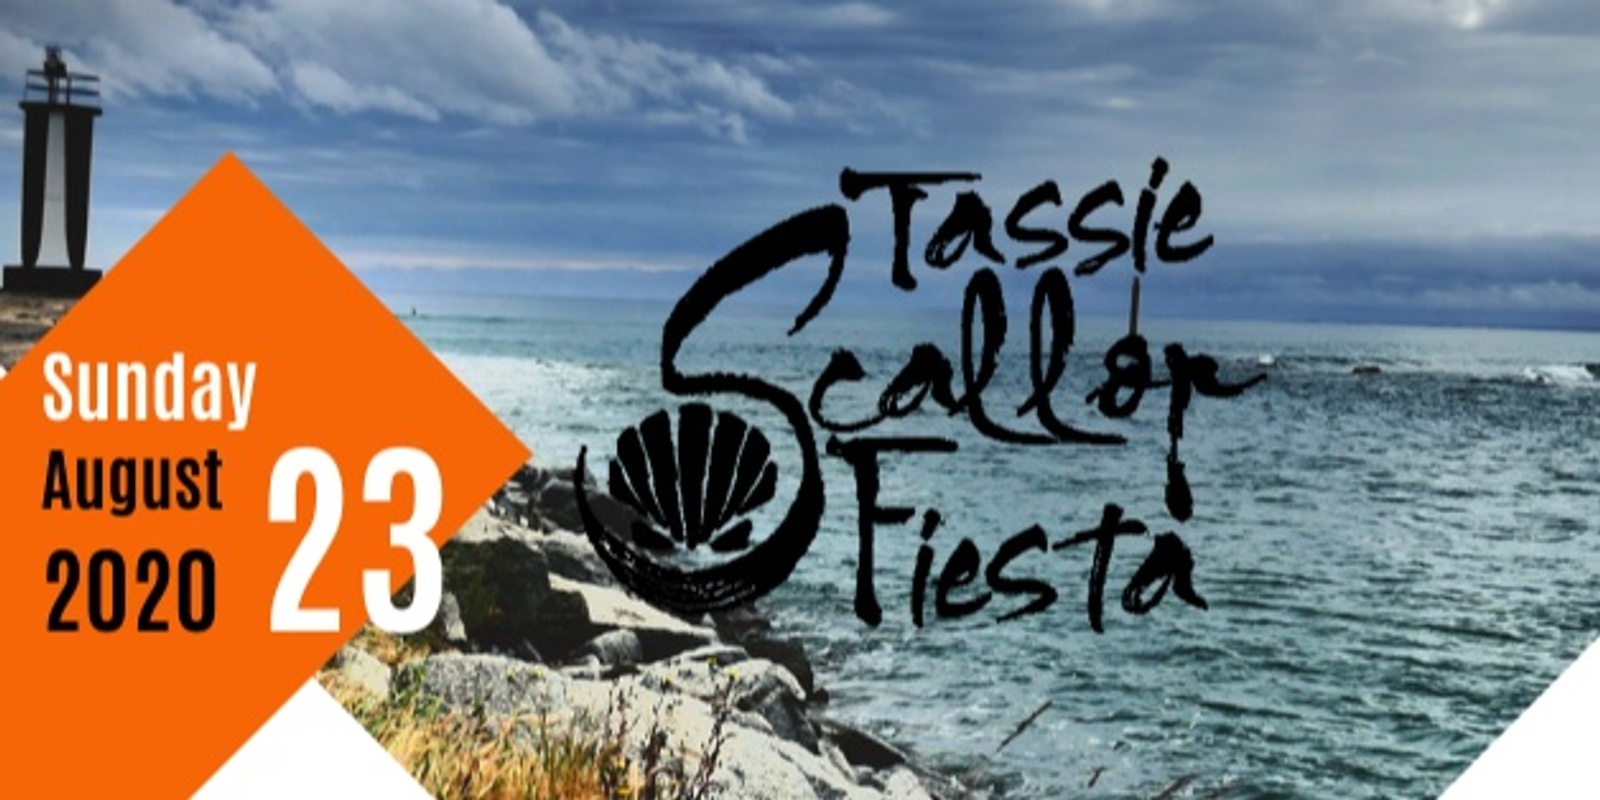 Banner image for Tassie Scallop Fiesta 2020 Bridport Tasmania